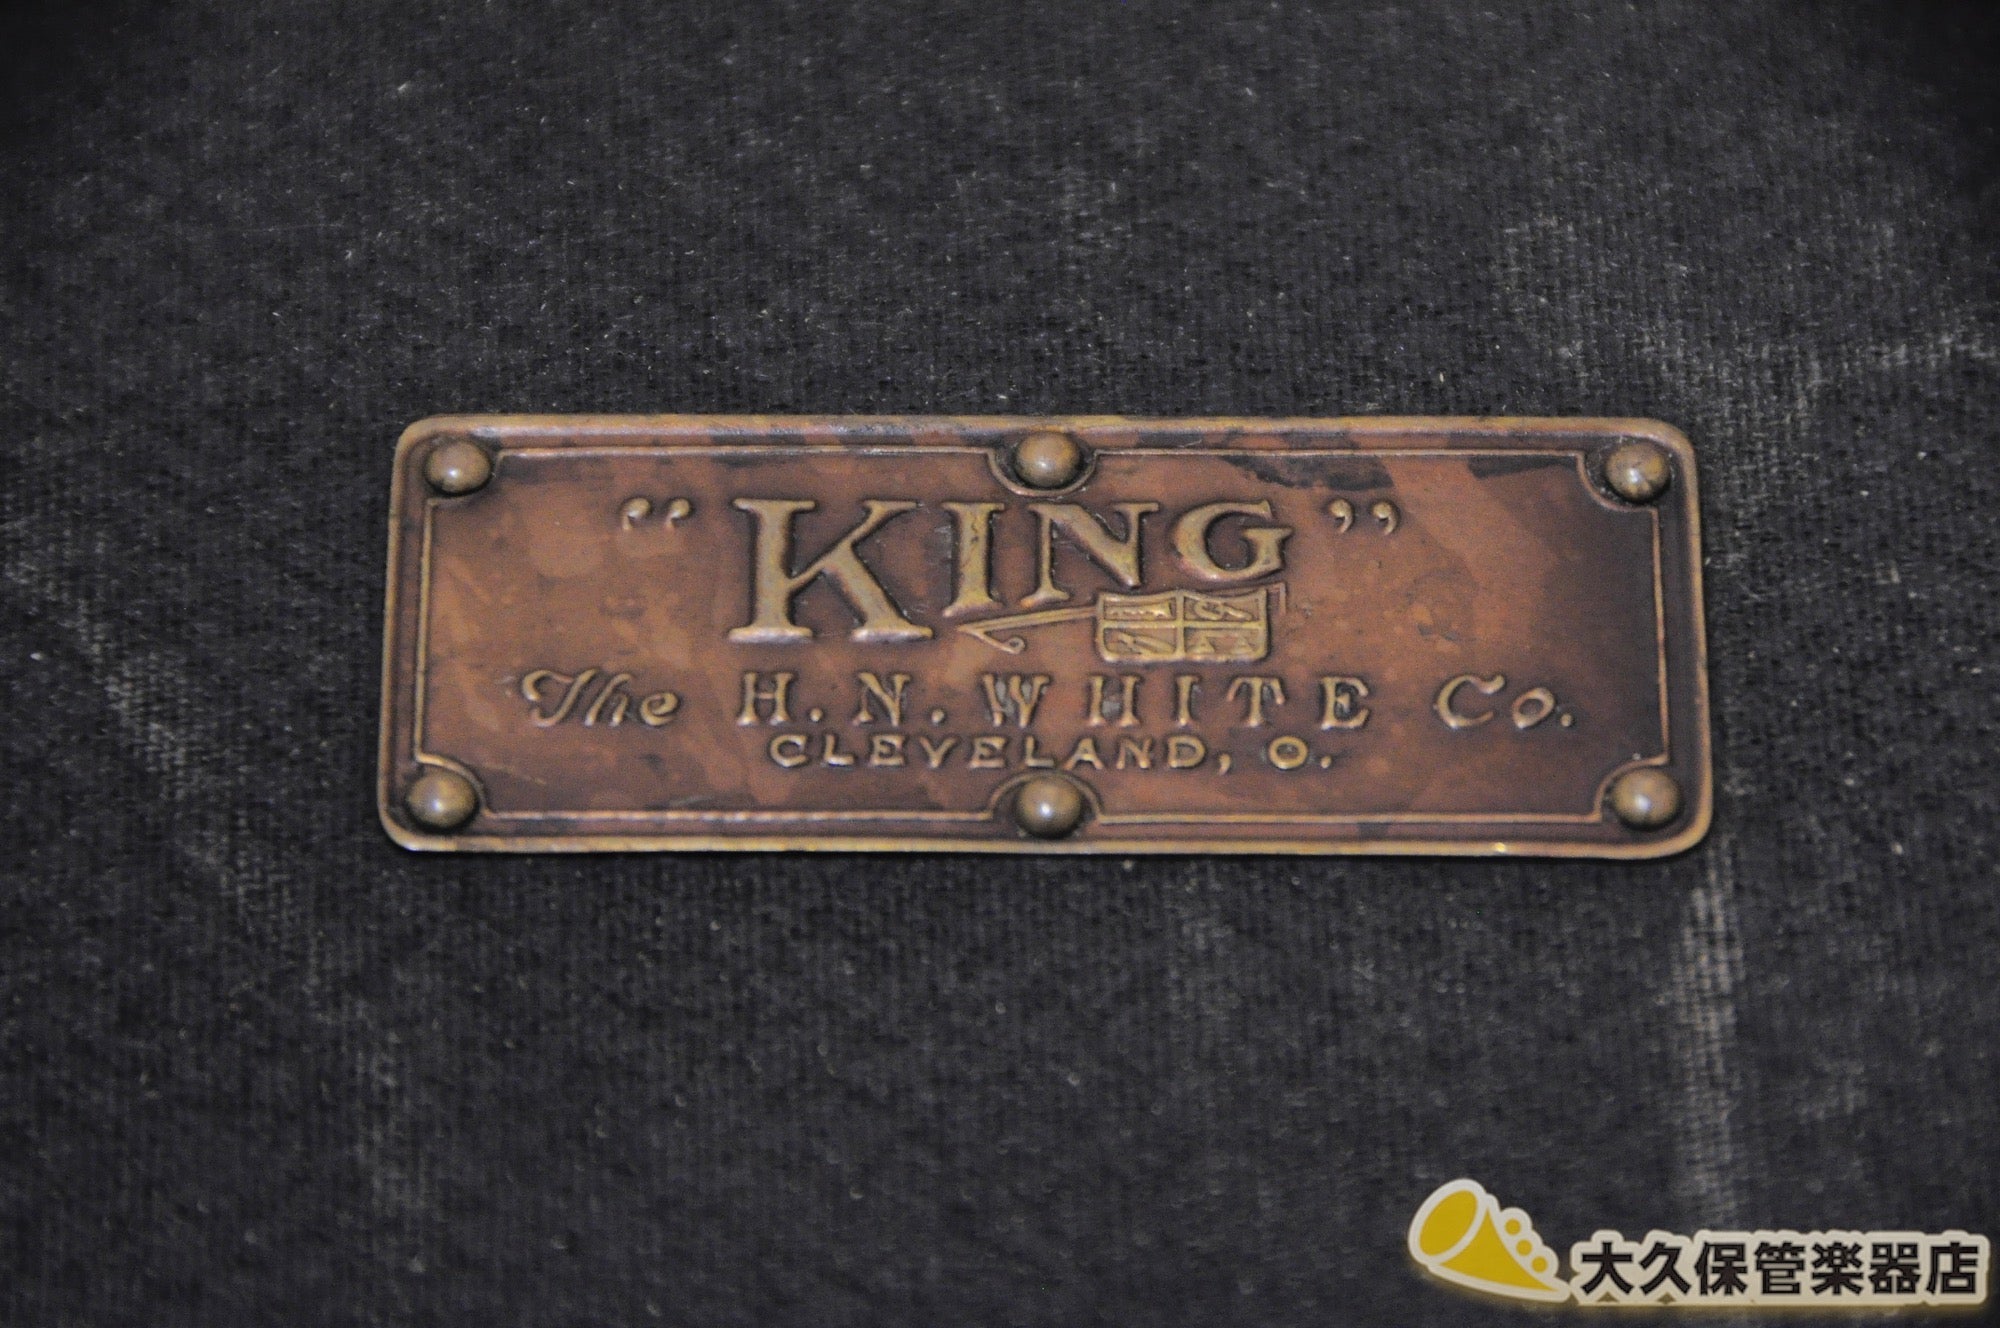 キング Voll-True Model Gold-plated アルトサクソフォン